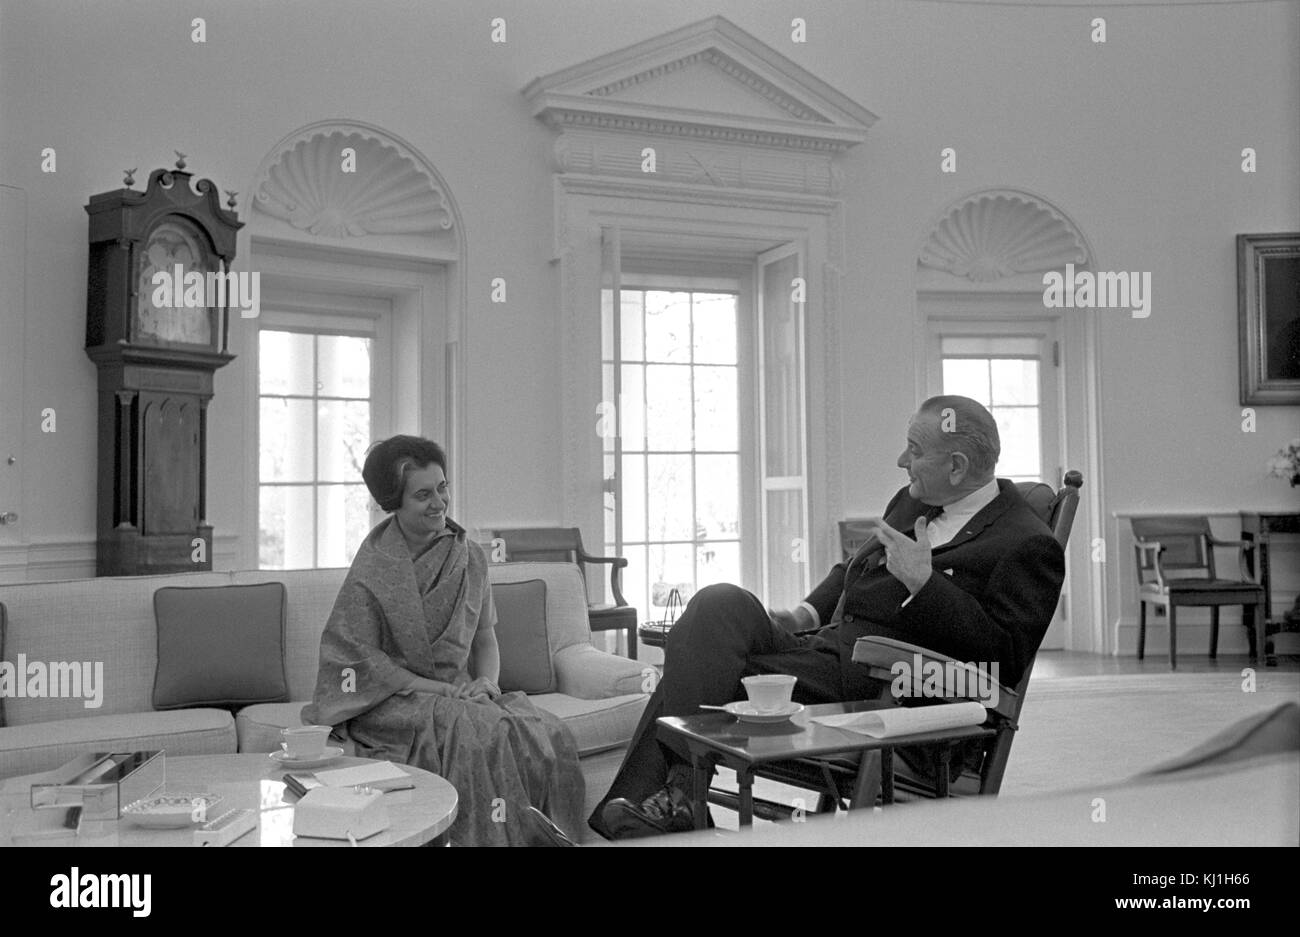 Indira Gandhi mit Präsident Lyndon Johnson der USA, Treffen in Washington 1968. Indira Gandhi (1917-1984), indischer Politiker und Premierminister von Indien von 1966 bis 1977 und dann wieder von 1980 bis zu ihrer Ermordung im Jahr 1984 Stockfoto